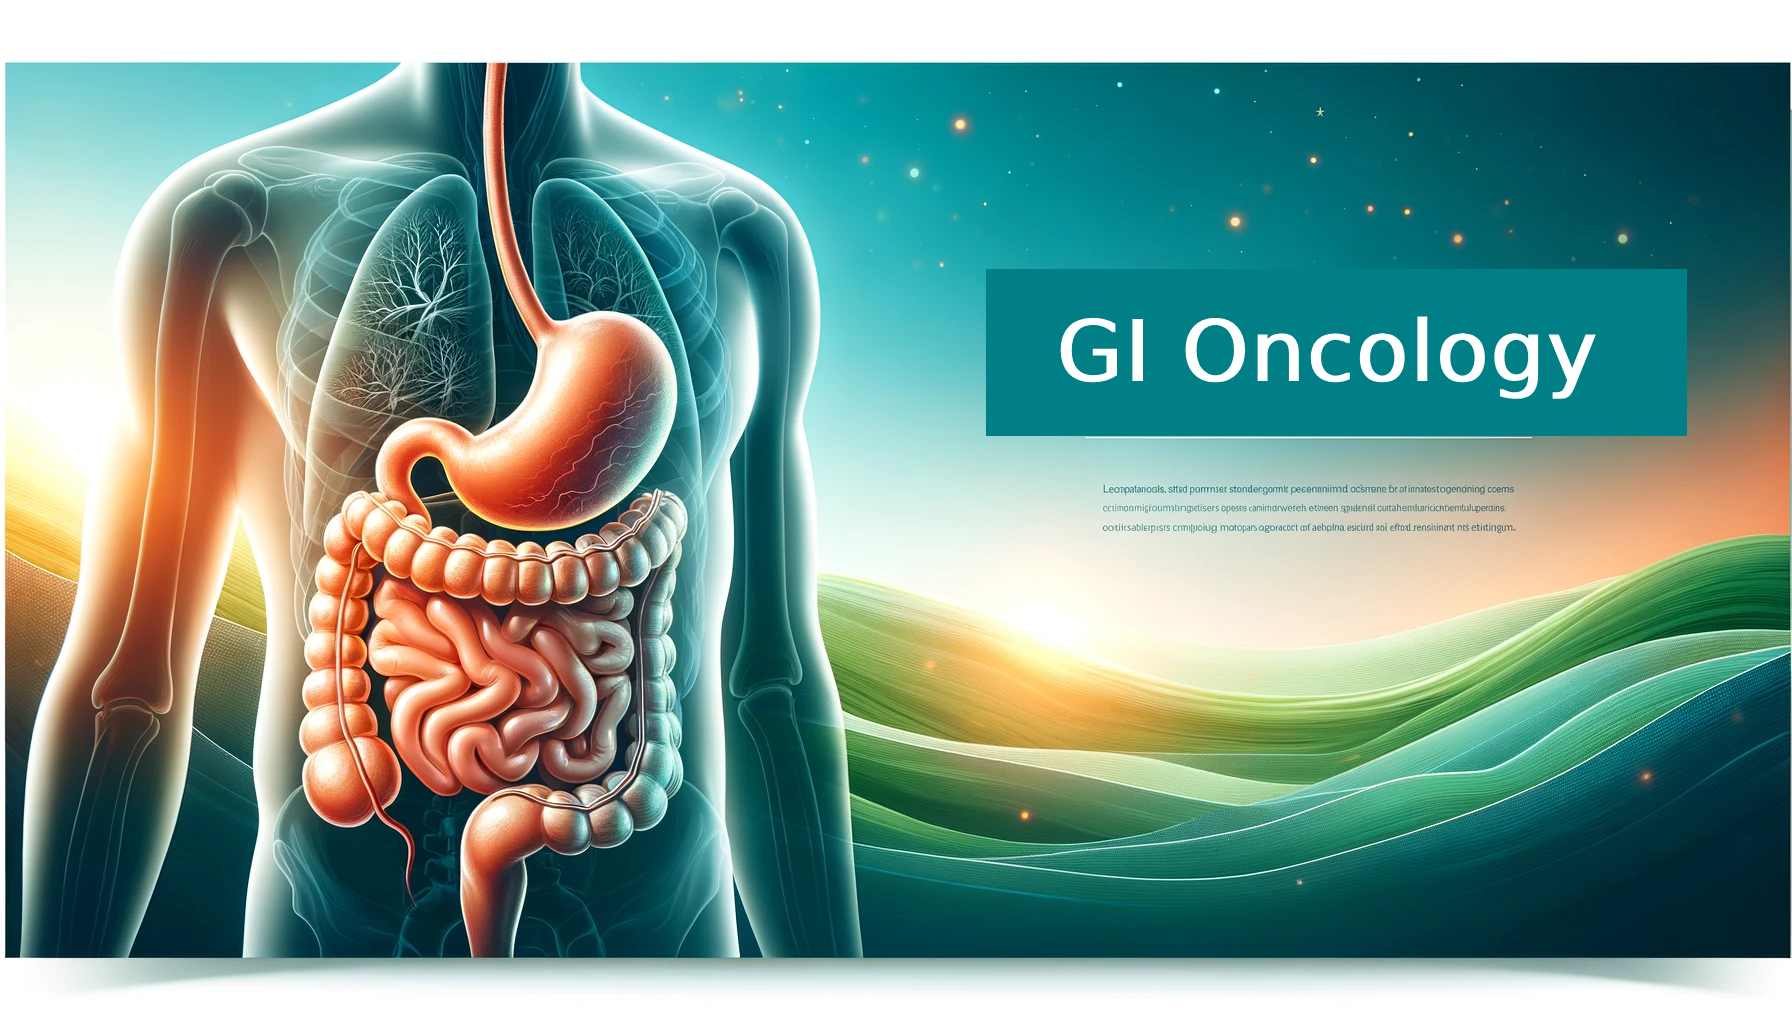 GI Oncology